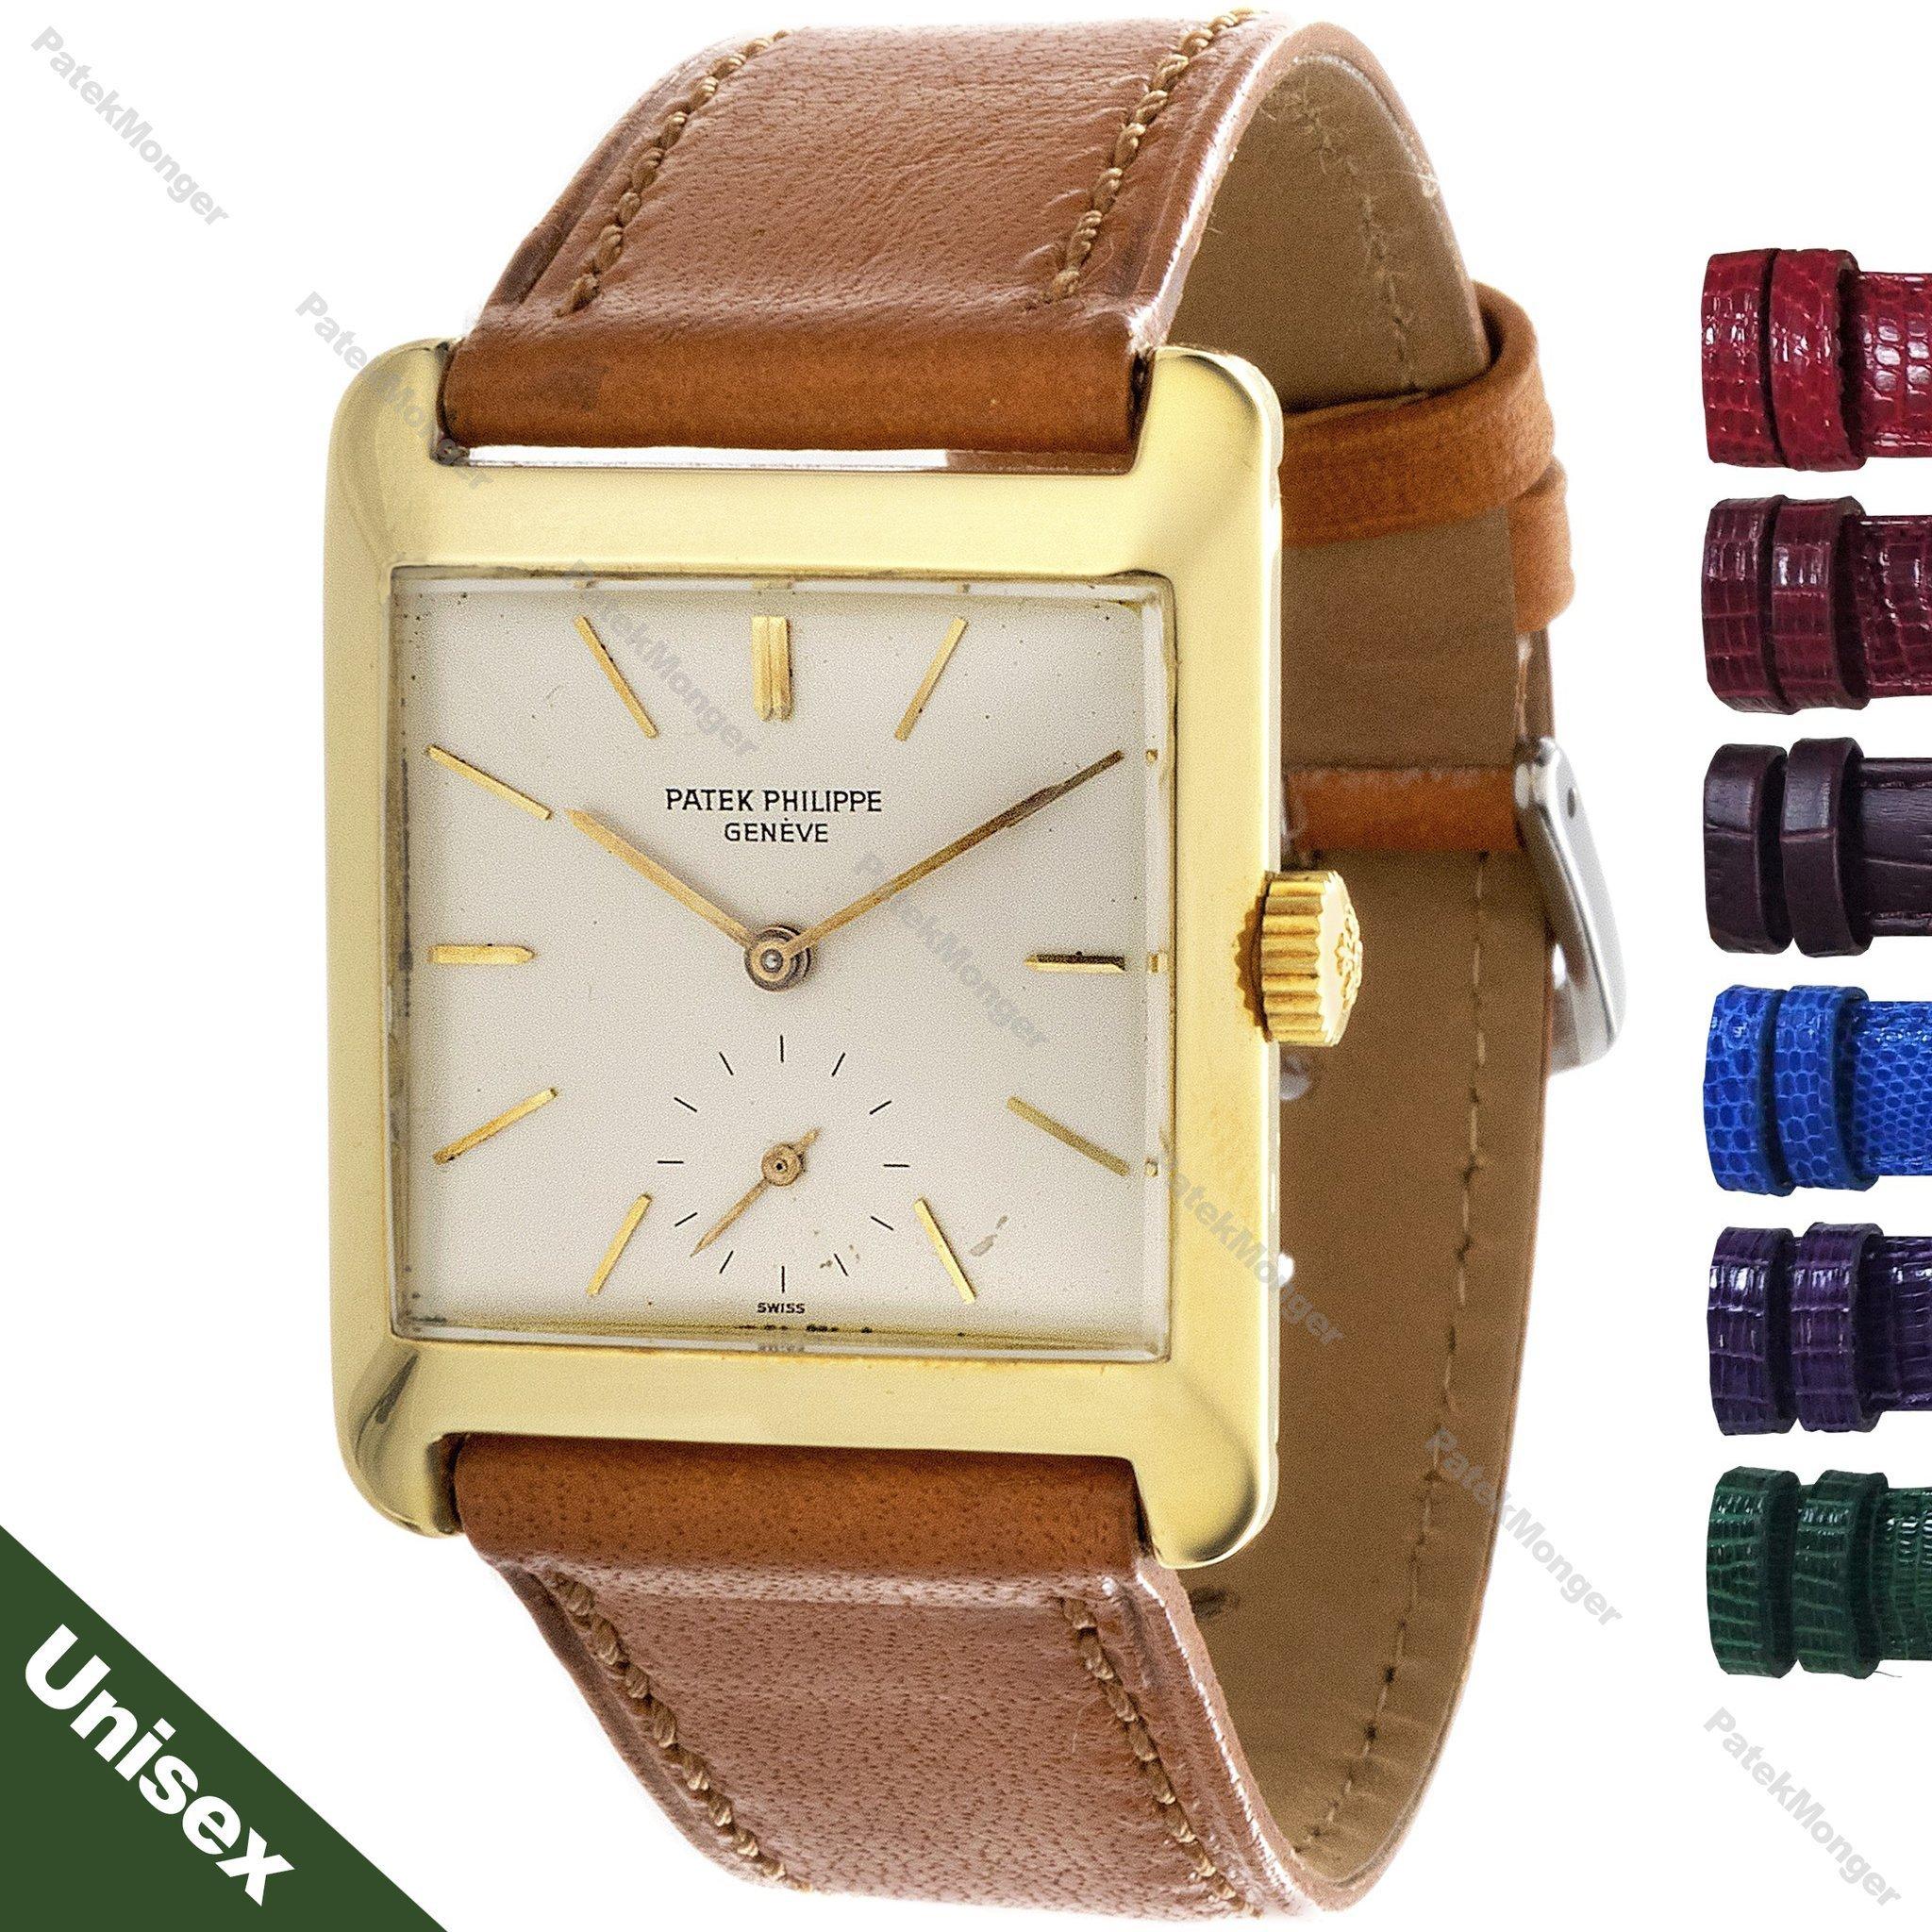 Einleitung:
Diese 2488J Vintage rechteckige Patek Philippe Uhr verfügt über Sub-Sekunden-Zifferblatt, und eine Auswahl von Uhrenarmbändern.  In der heutigen Mode ist diese Größe perfekt für eine Frau oder einen Mann.  Es sind mehrere Gurtoptionen